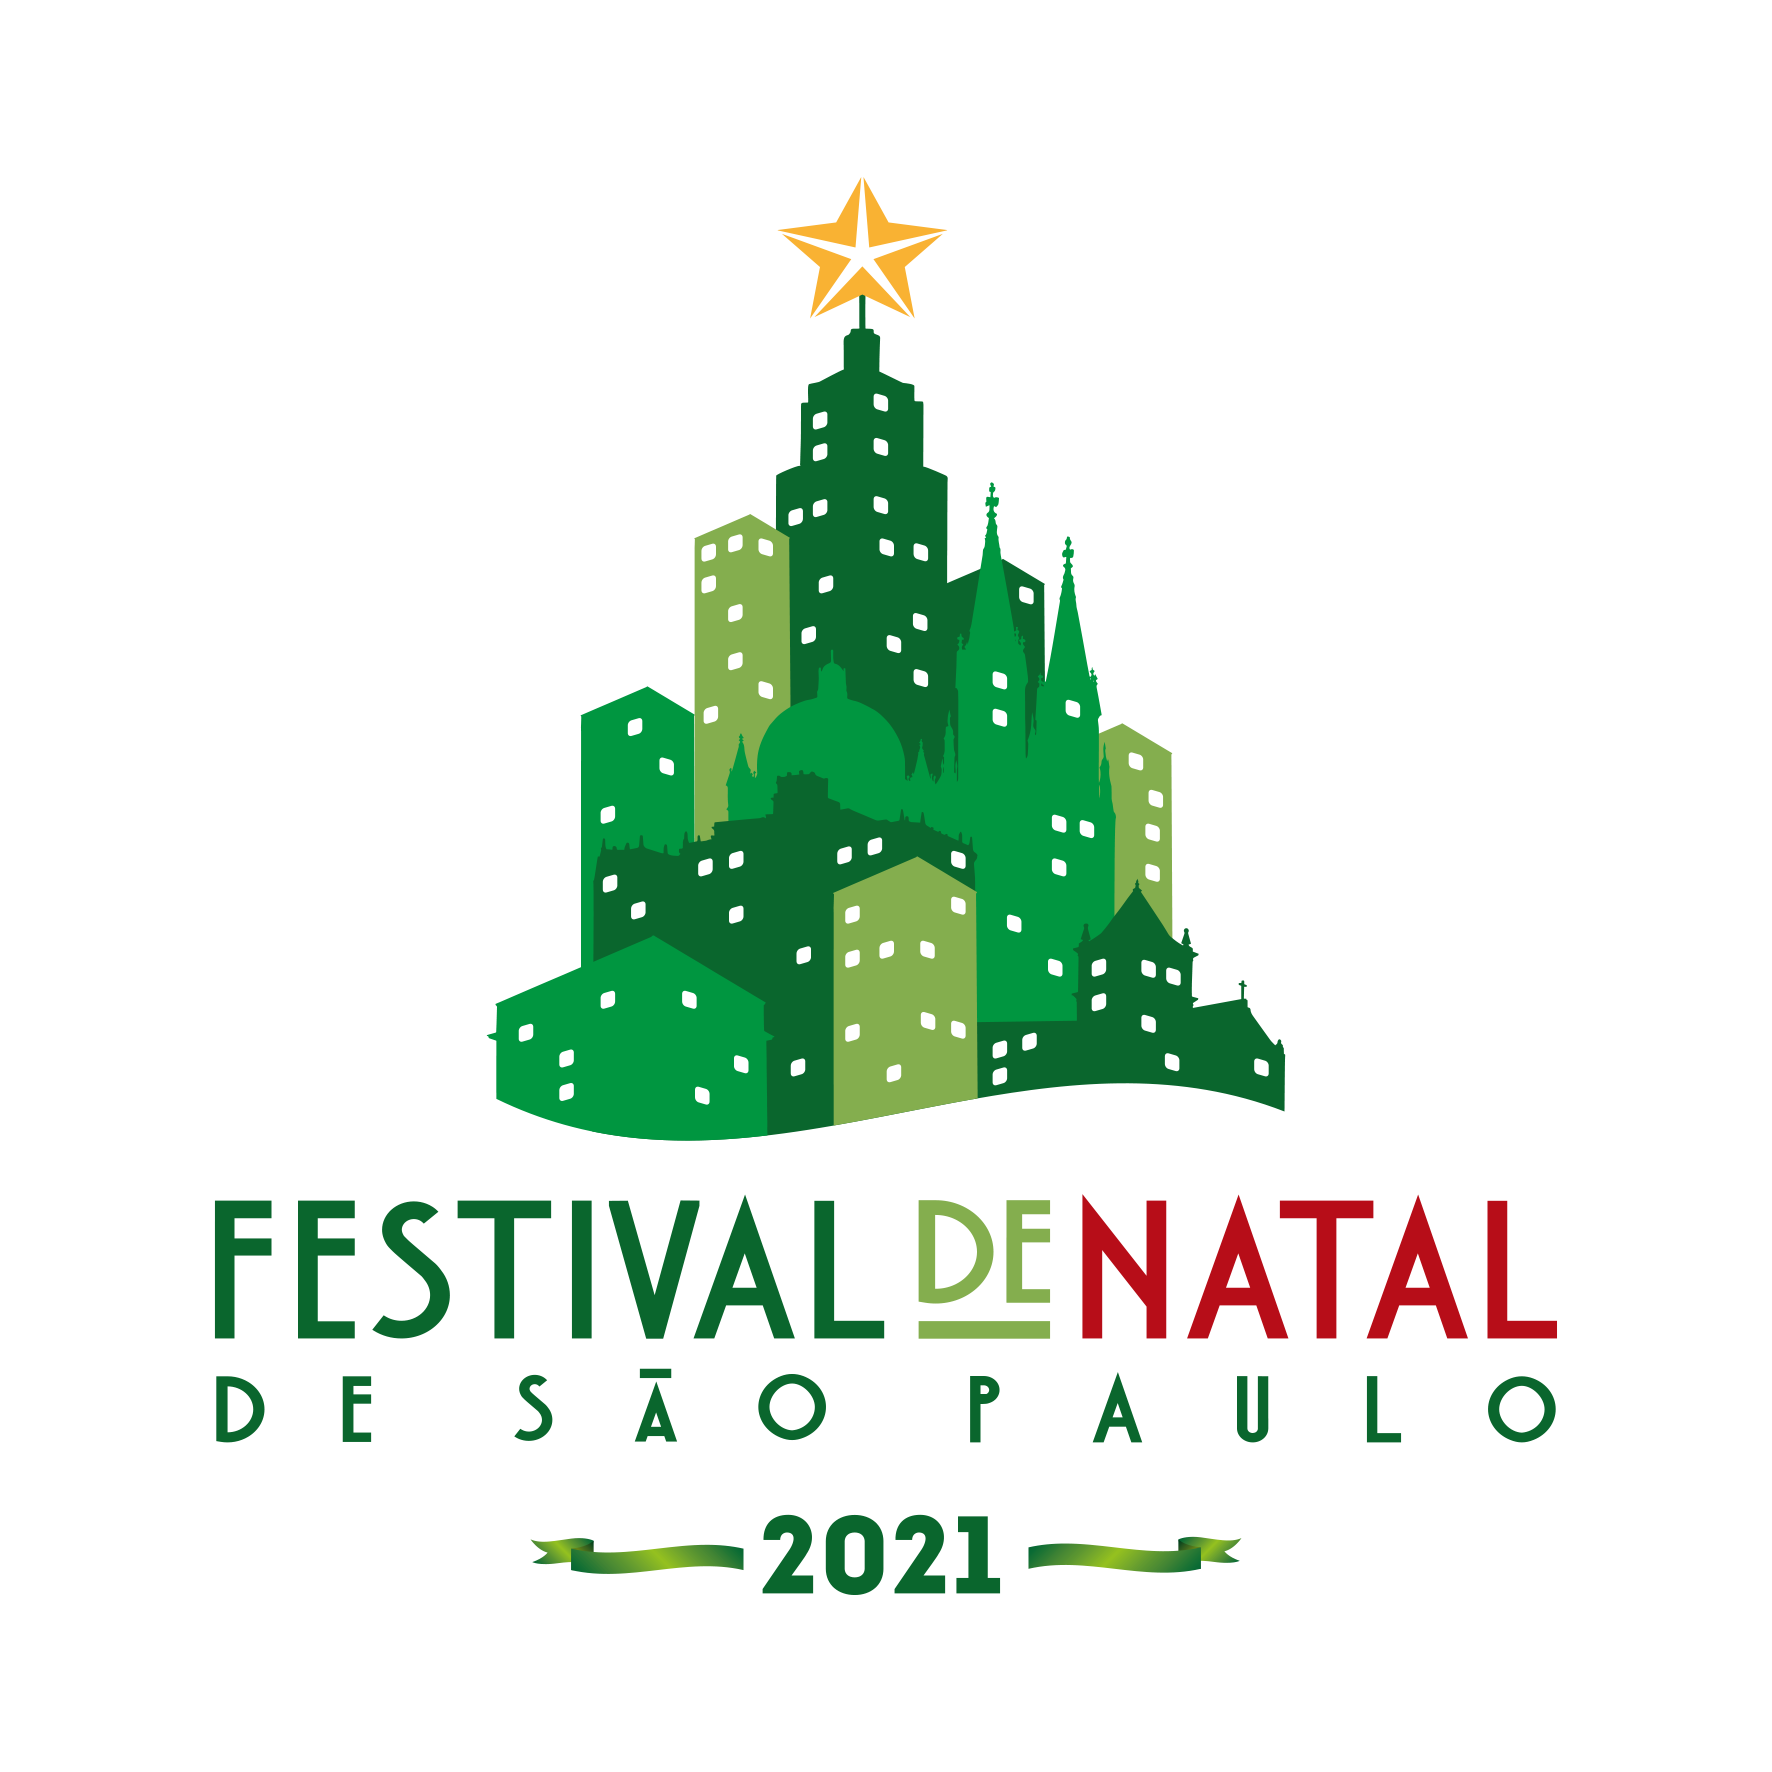 Festival — Festival de Natal de São Paulo